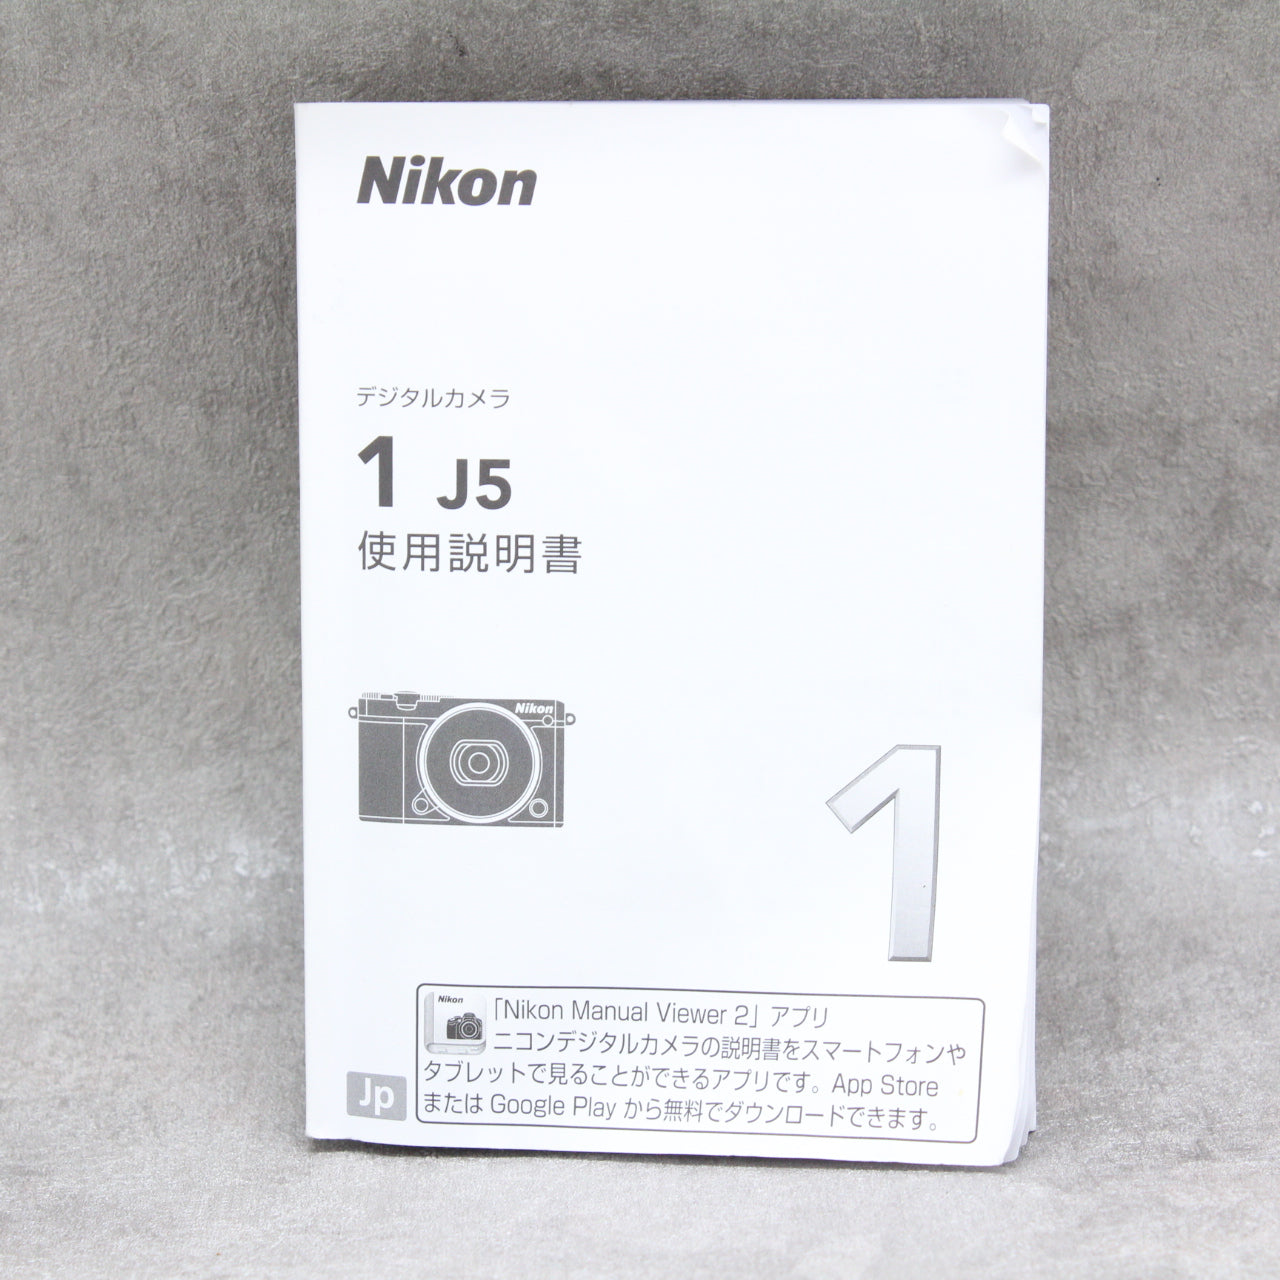 中古品 Nikon J5 ダブルズームキット 【10月25日(火)のYouTube生配信でご紹介】